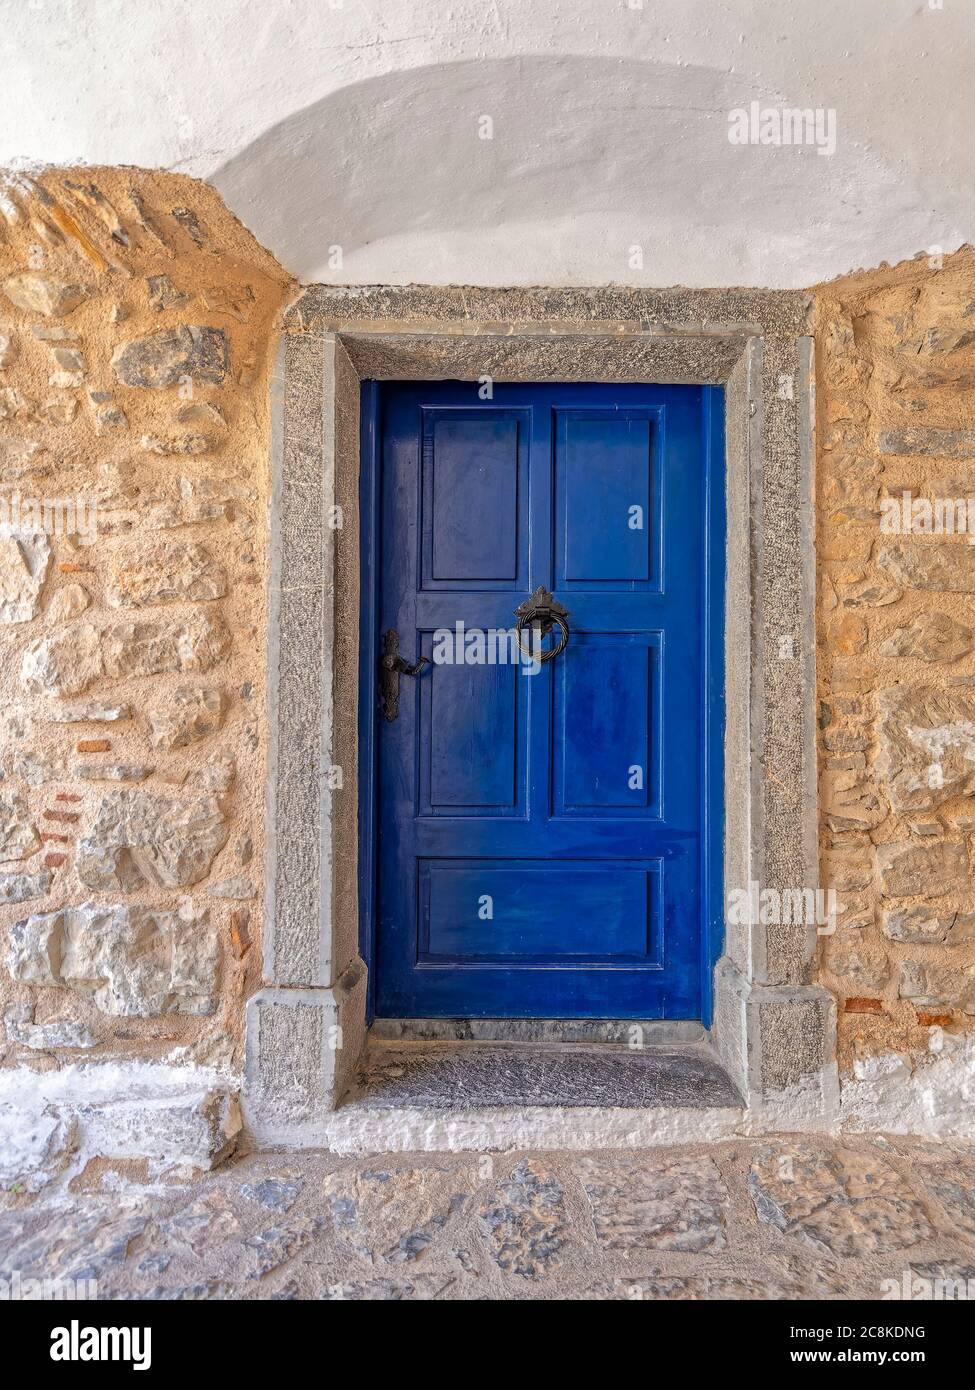 Porte bleu vif en pierre rugueuse et façade de maison blanchie à la chaux. Promenade dans les ruelles médiévales de Pyrgi, île de Chios, Grèce. Banque D'Images